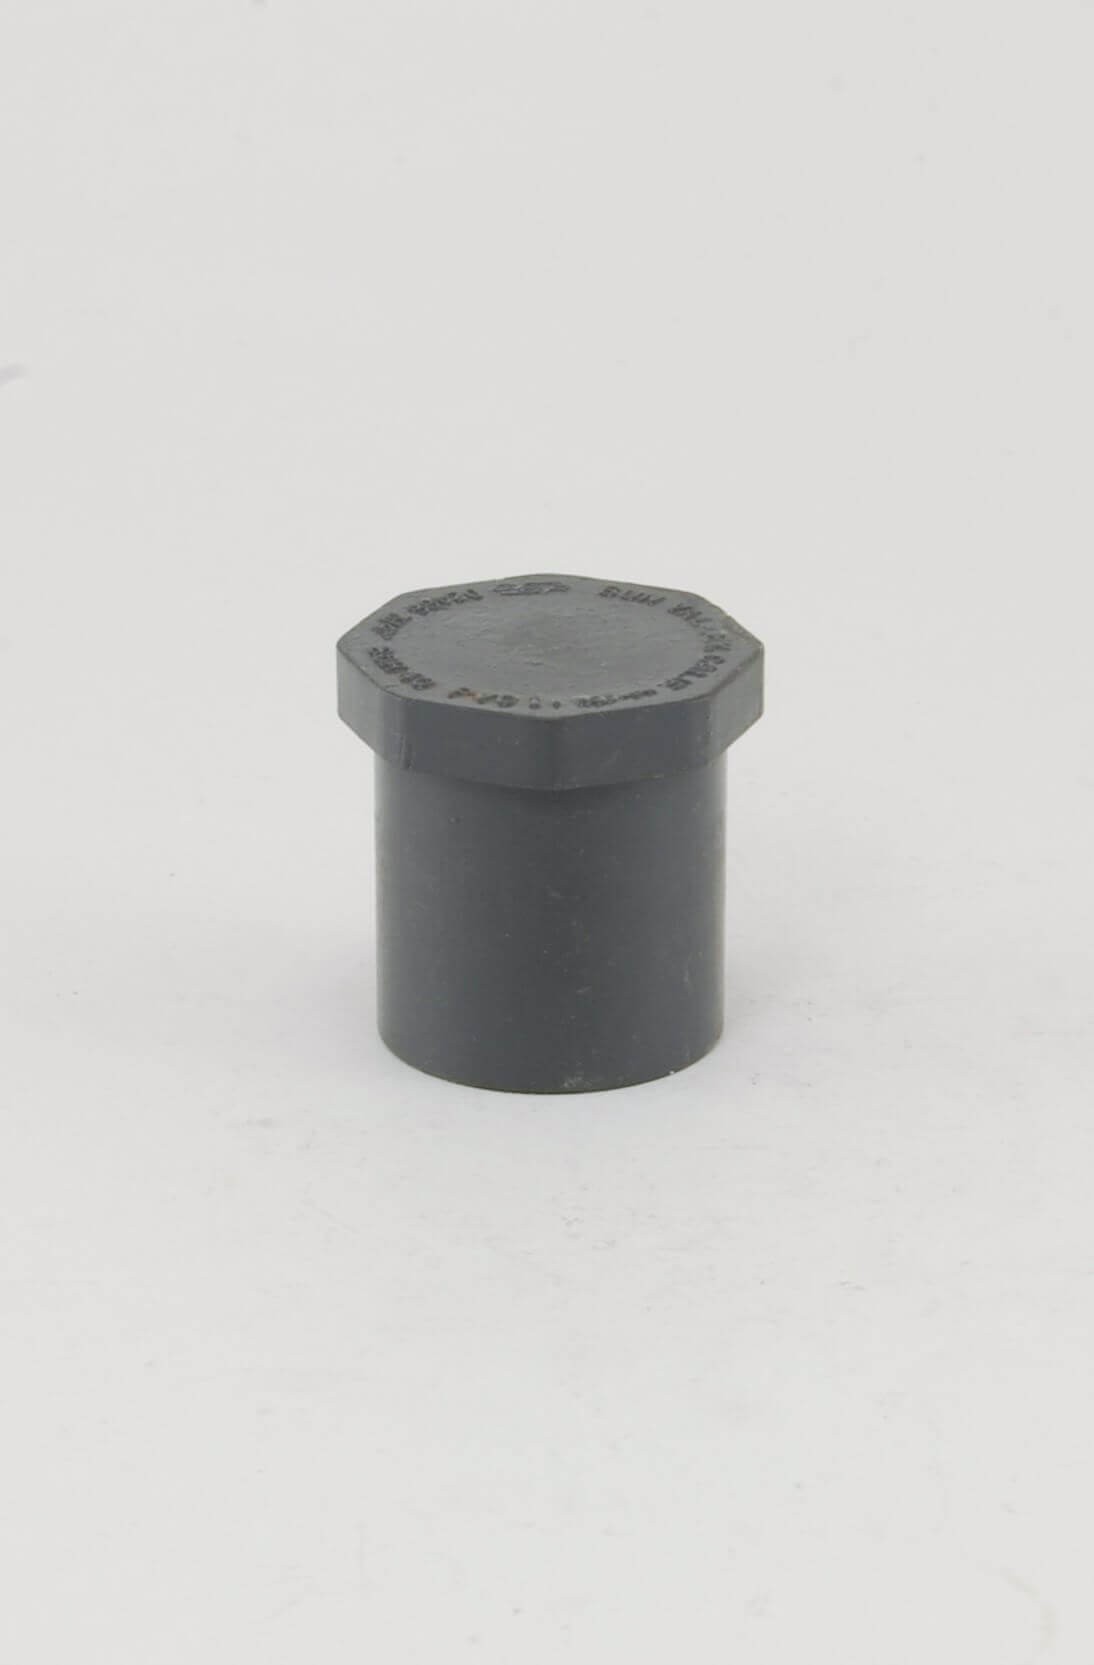 Sch 40 Grey PVC Plug sp